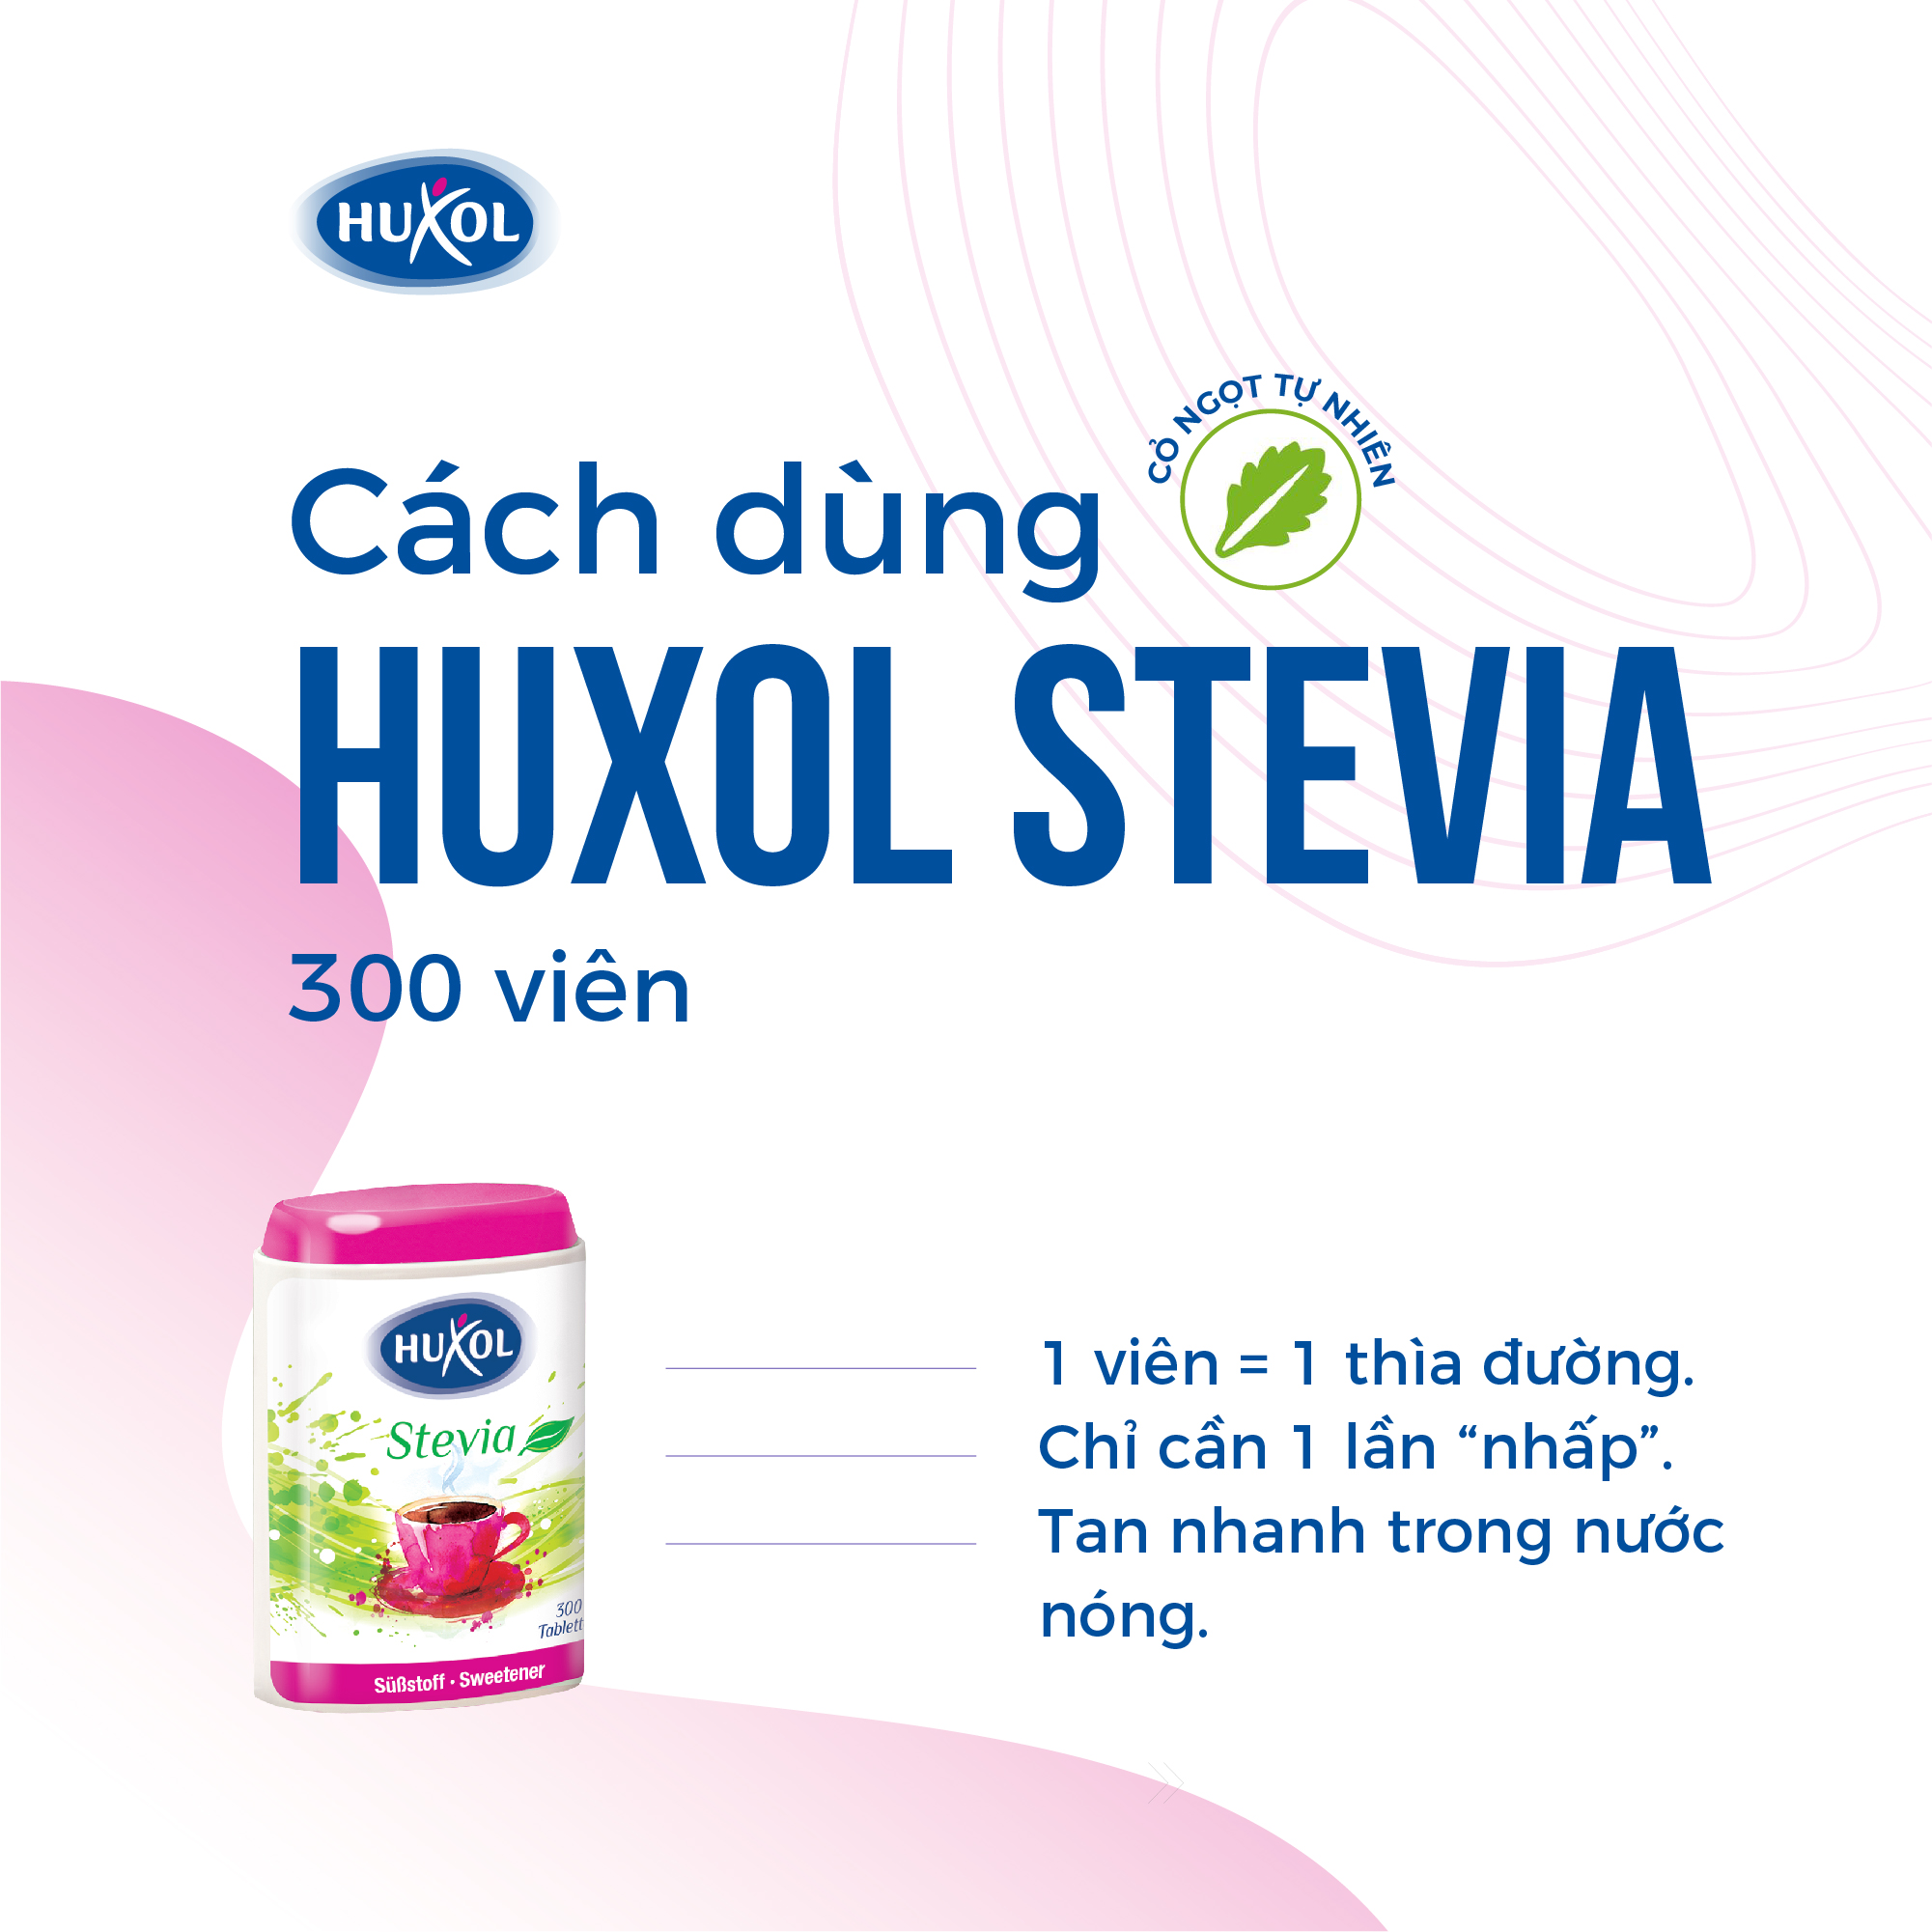 Đường Ăn Kiêng Sweetener Huxol Cỏ Ngọt Stevia Tự Nhiên 300 viên - Nhập khẩu chính hãng từ Đức - Dành cho người tiểu đường, giảm cân, cao huyết áp